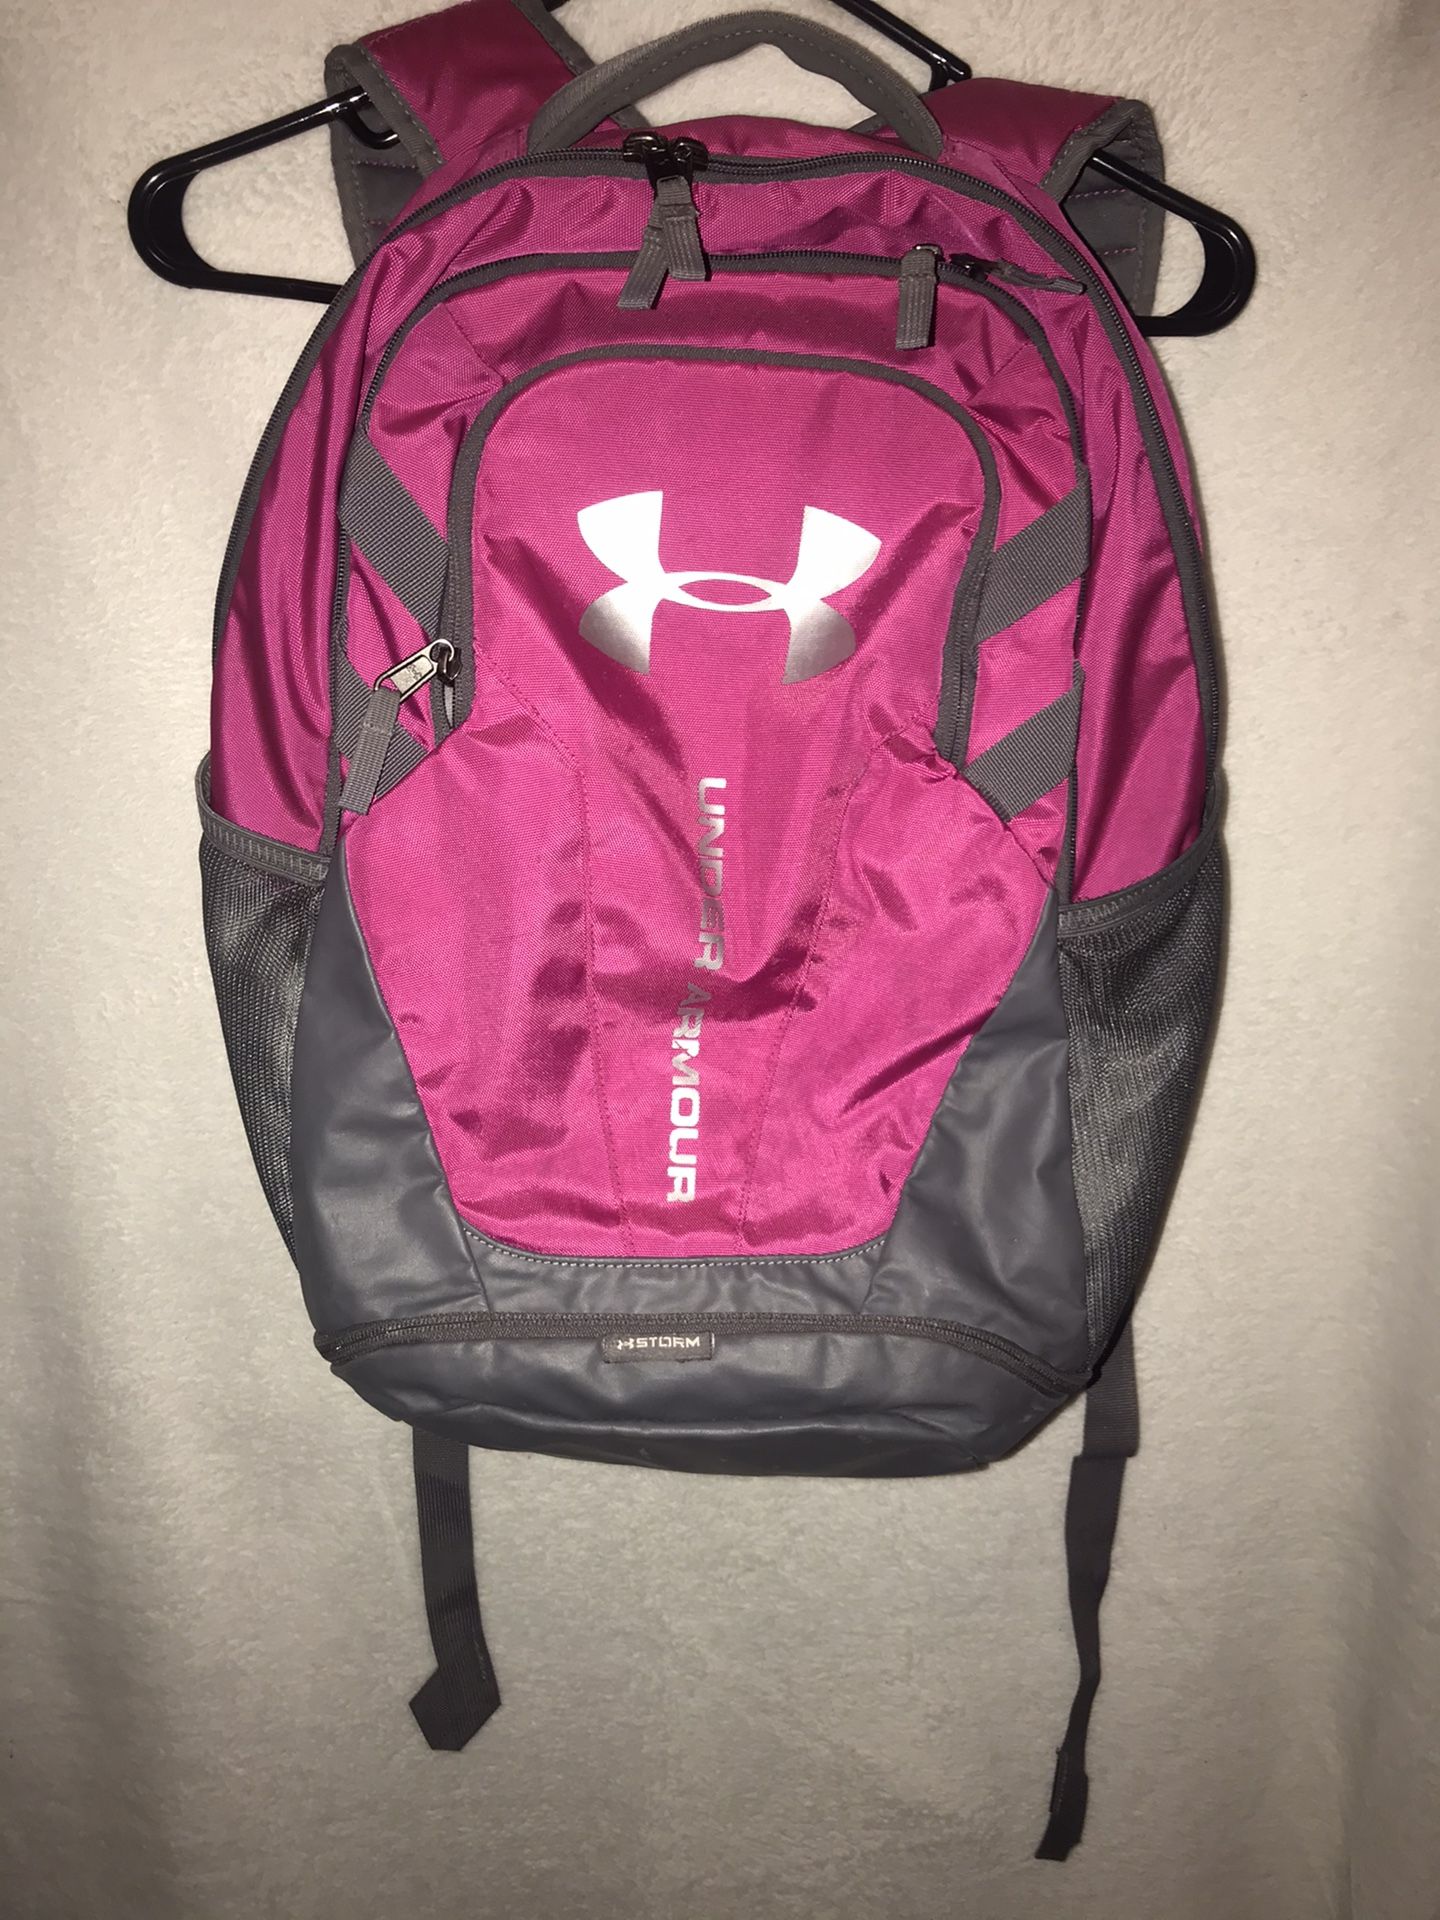 Pink under armor backpack